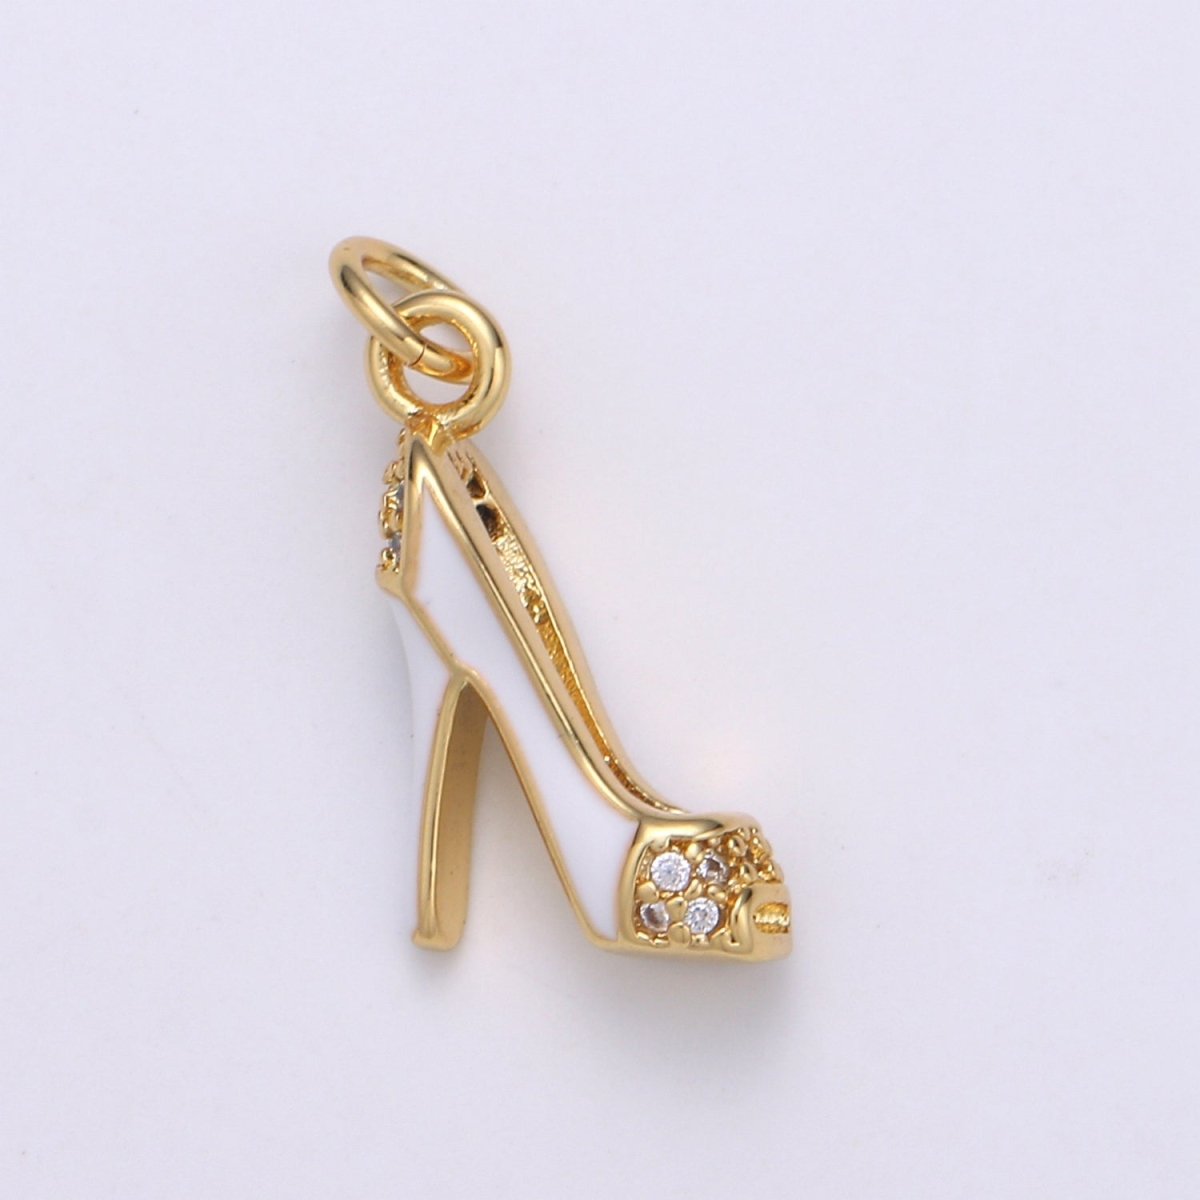 Gold Filled Women's Heels Charm D-797-D-799 - DLUXCA